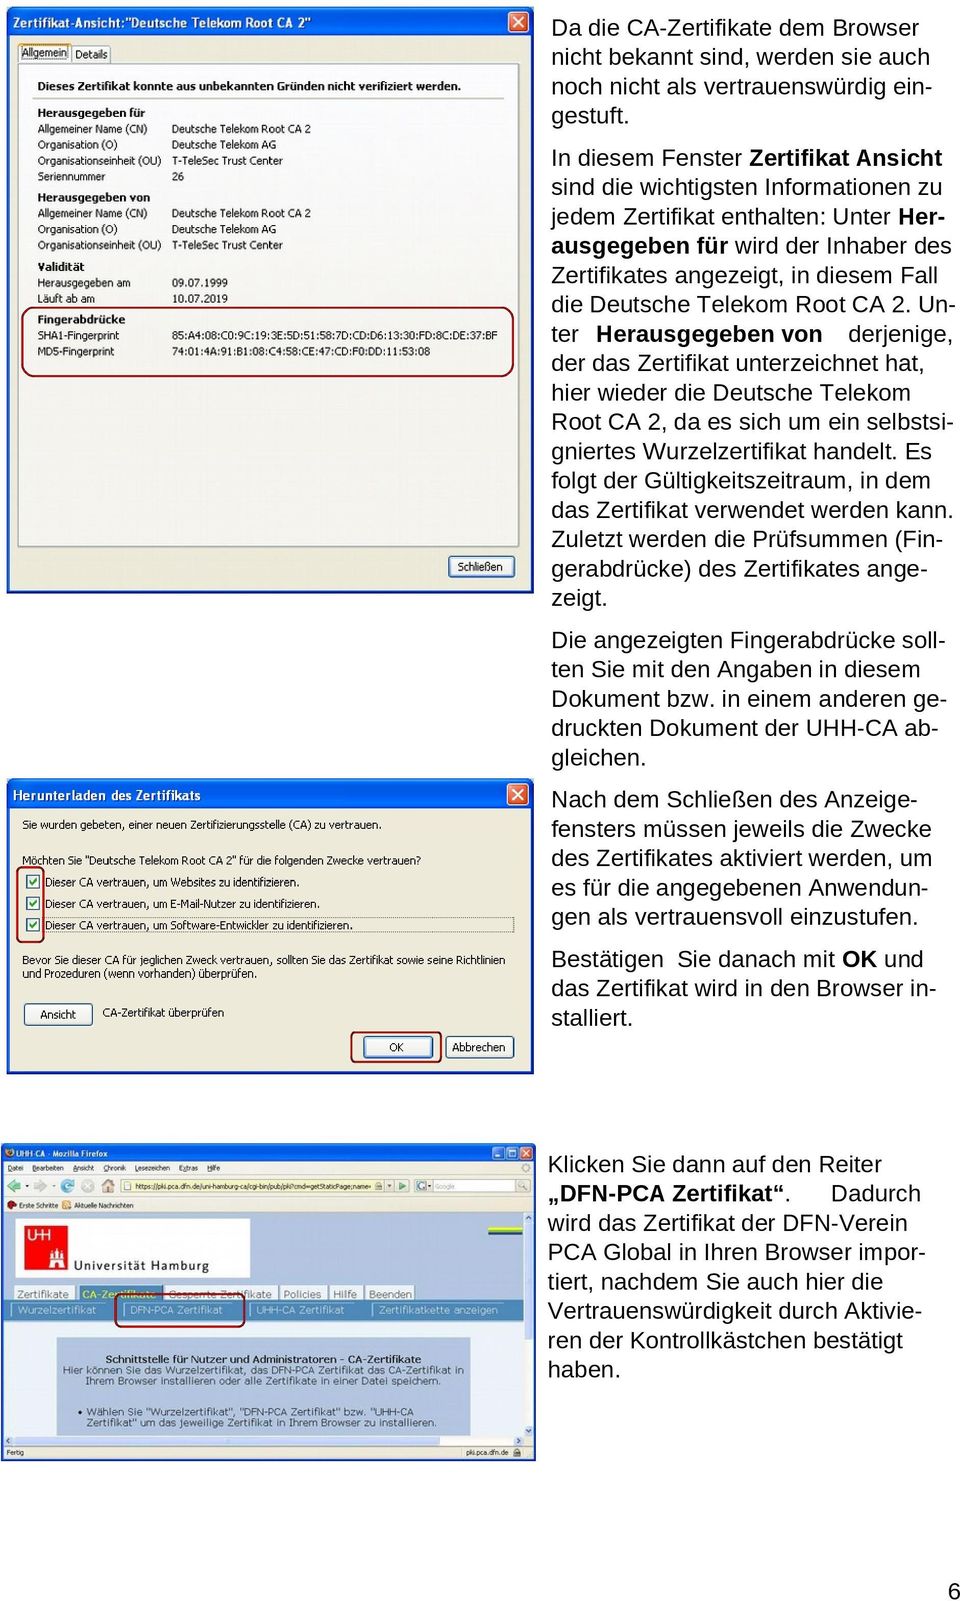 Telekom Root CA 2. Unter Herausgegeben von derjenige, der das Zertifikat unterzeichnet hat, hier wieder die Deutsche Telekom Root CA 2, da es sich um ein selbstsigniertes Wurzelzertifikat handelt.